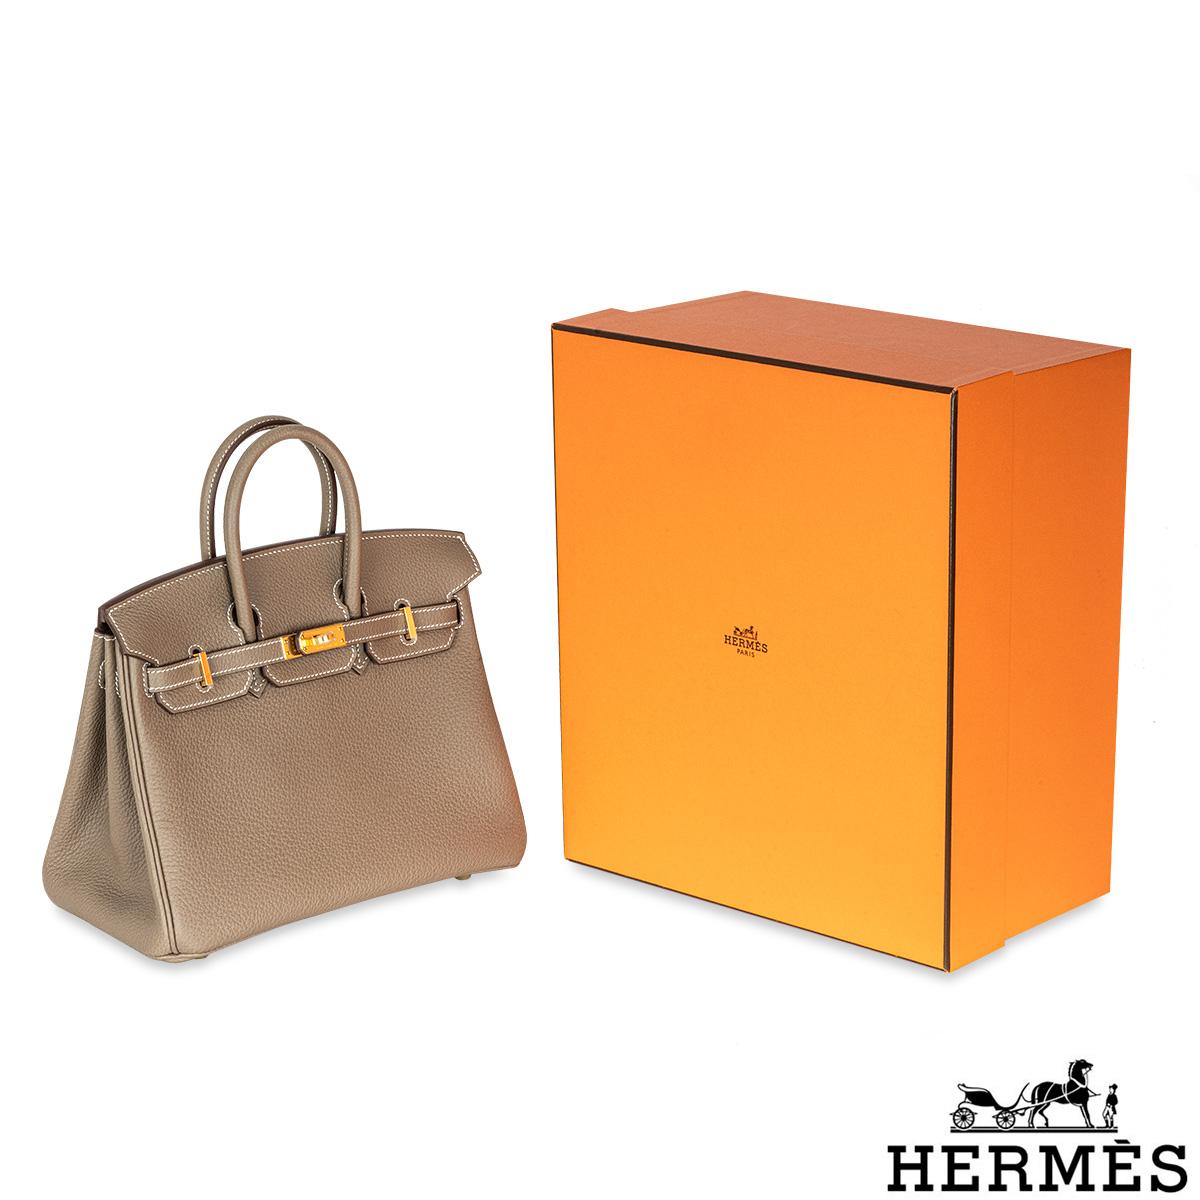 Hermès Birkin 25cm Etoupe Togo GHW 4